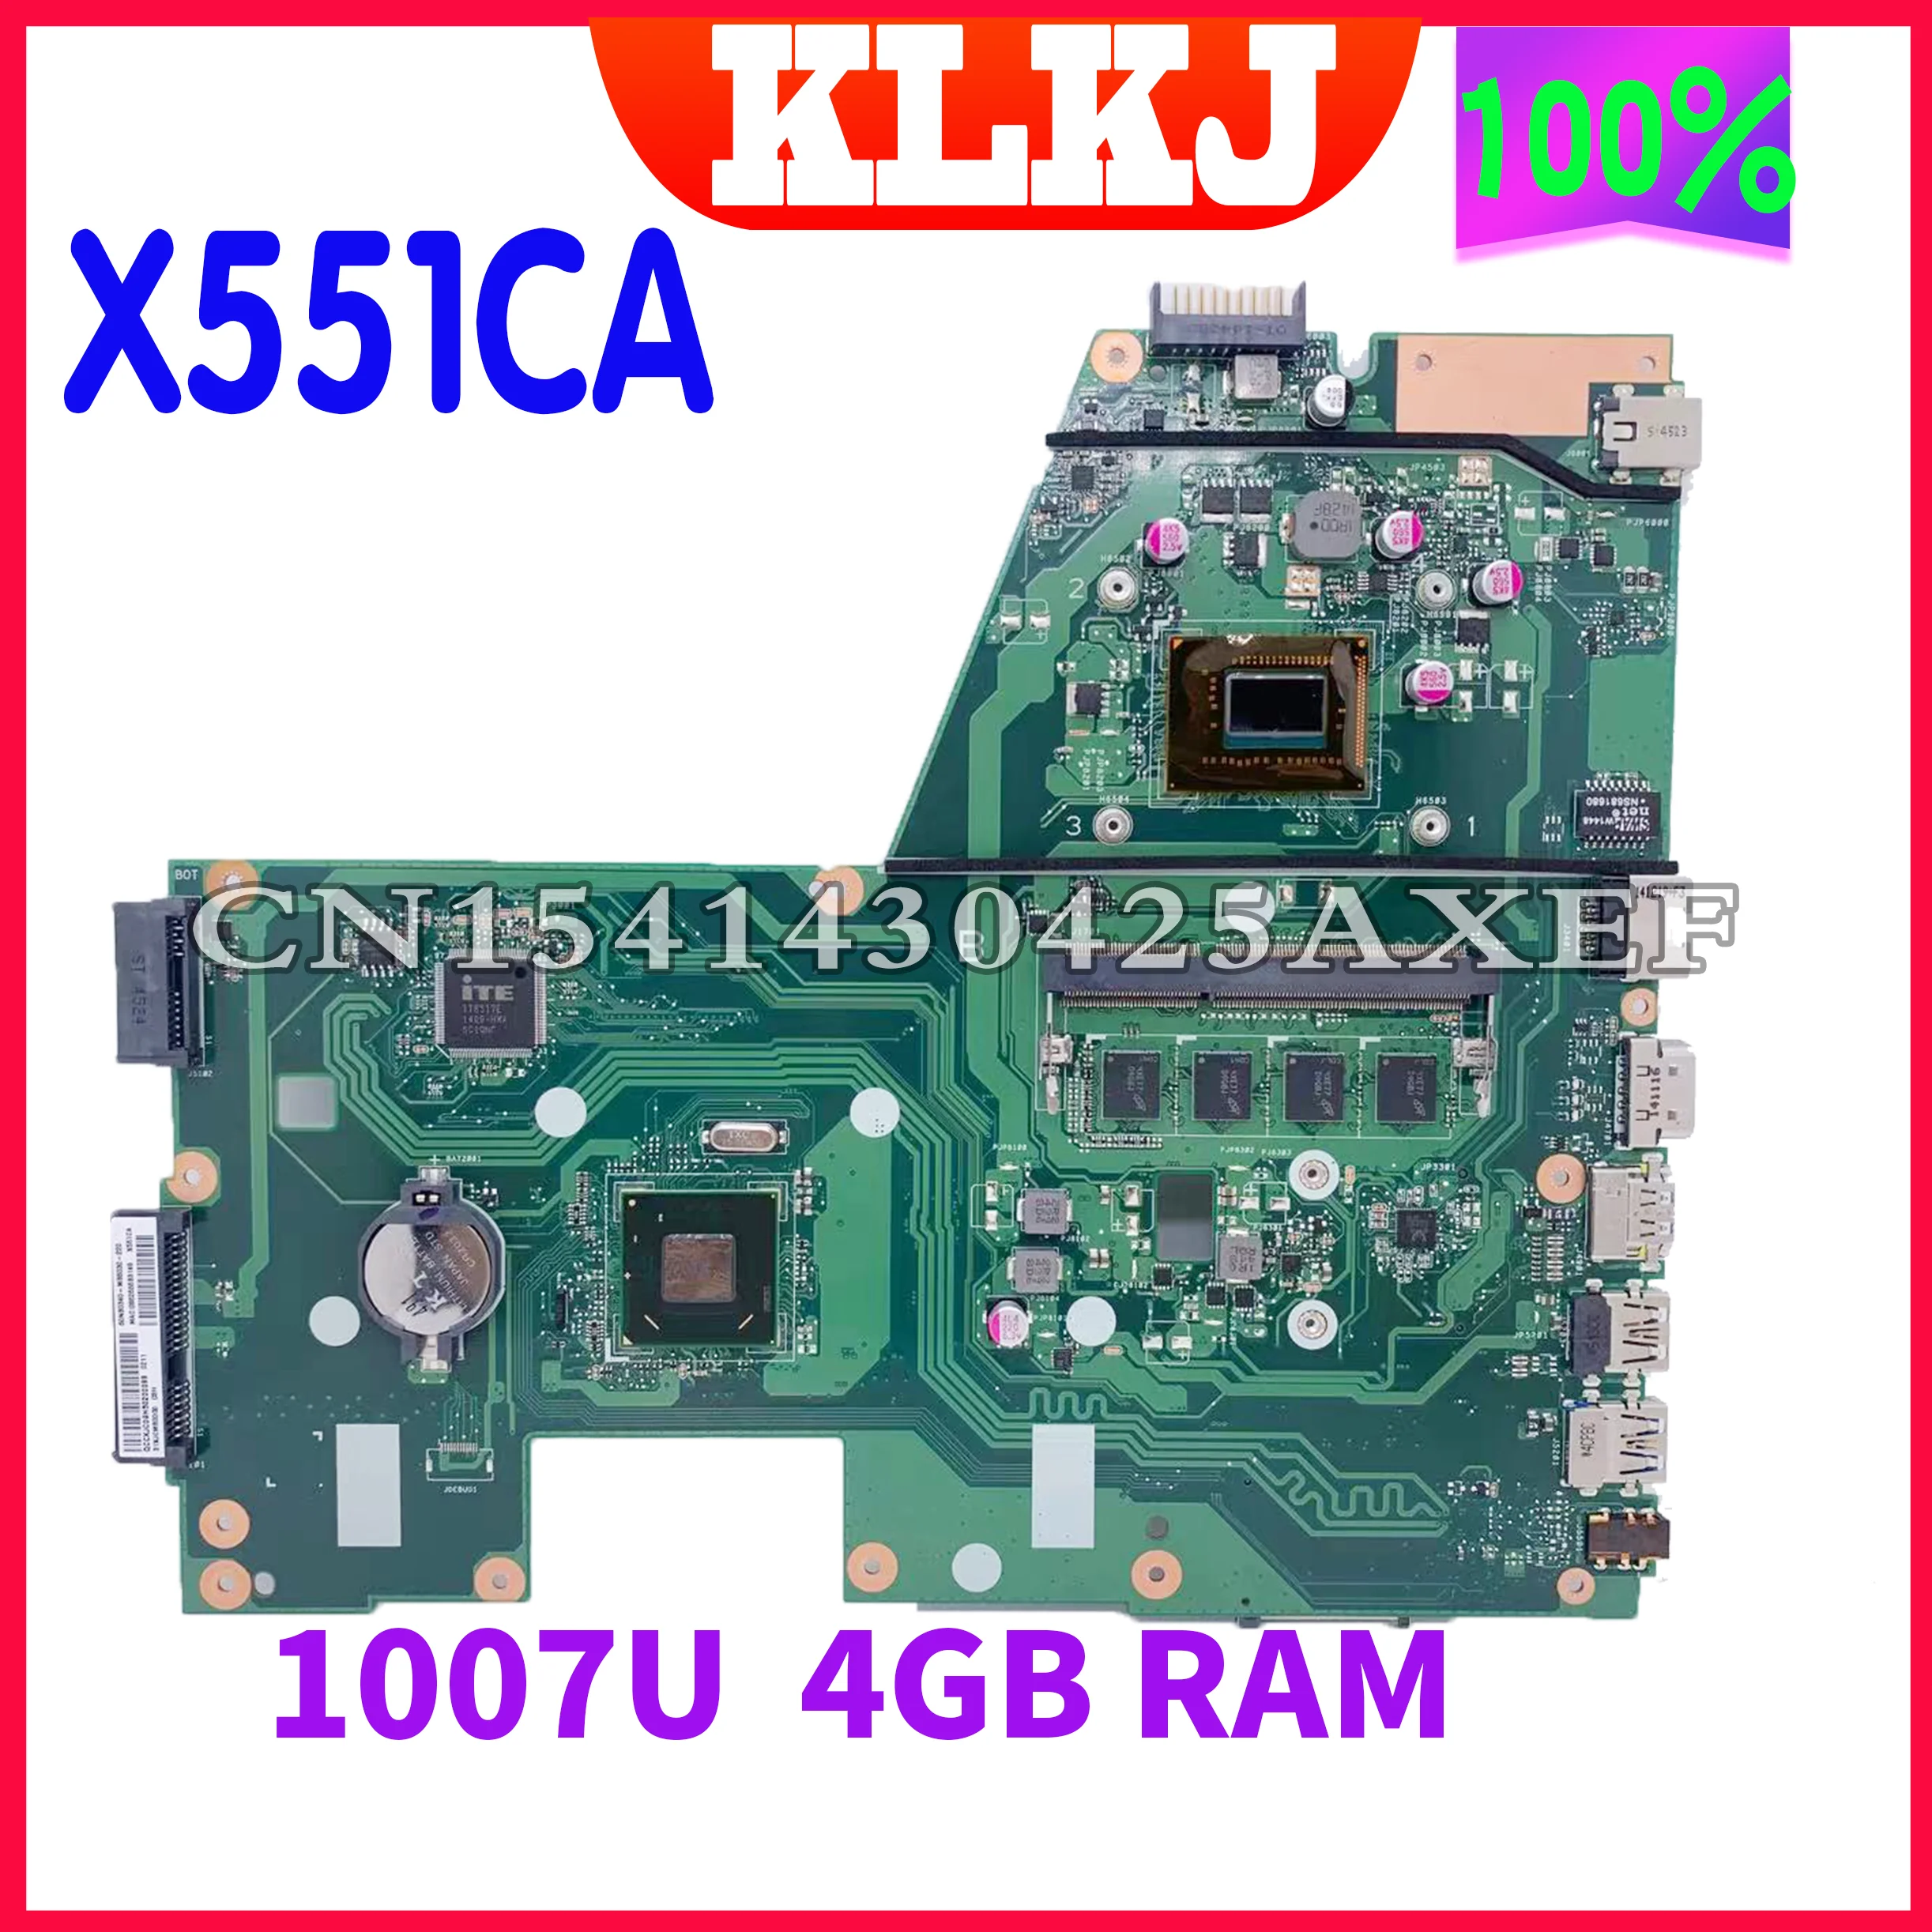    Dinzi X551CA   ASUS X551CAP X551C X551CA,   1007U 4GB-RAM